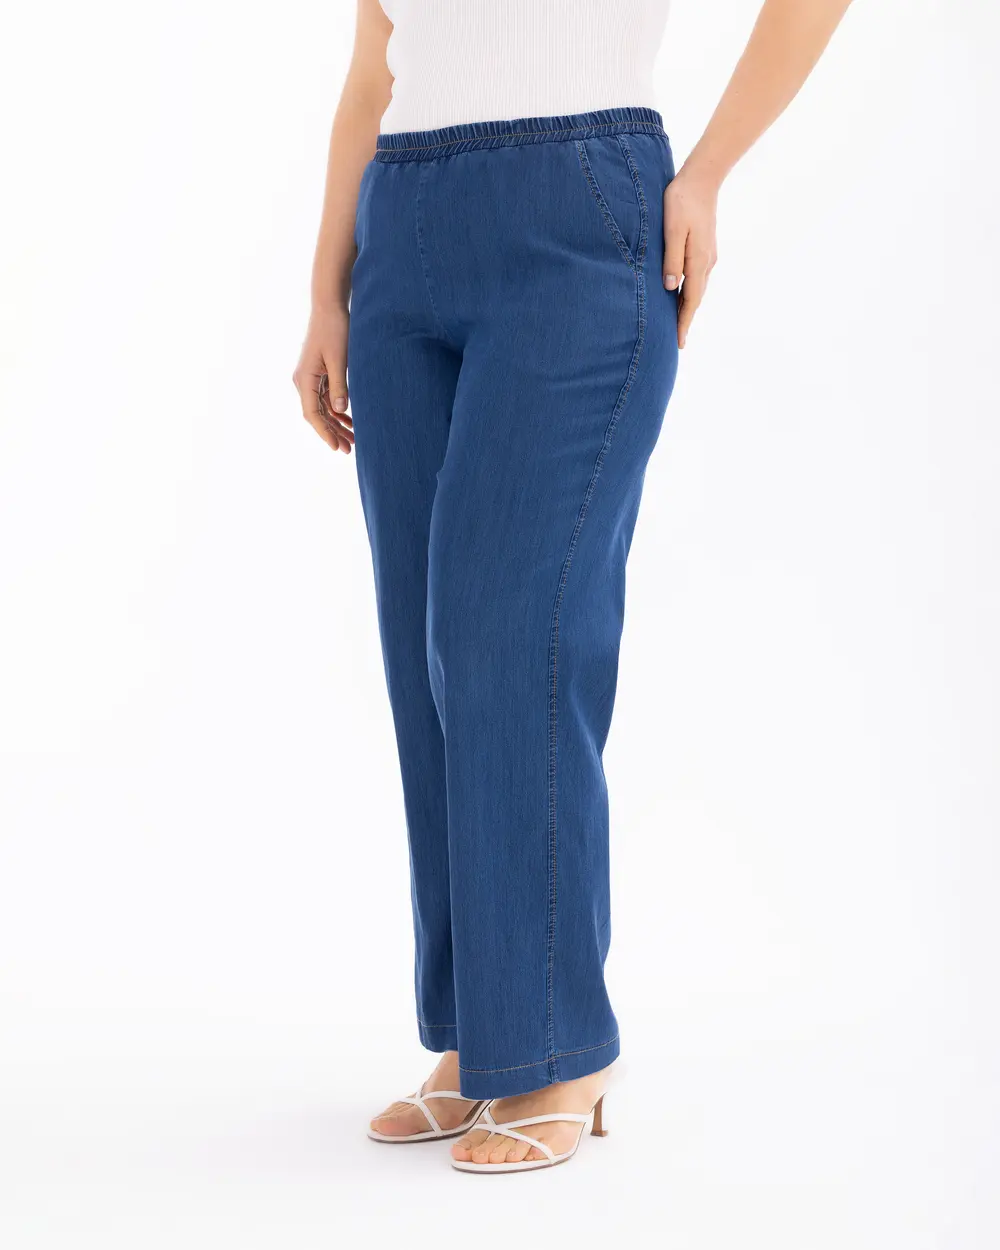 Plus Size Elastic Waist Jean Pants